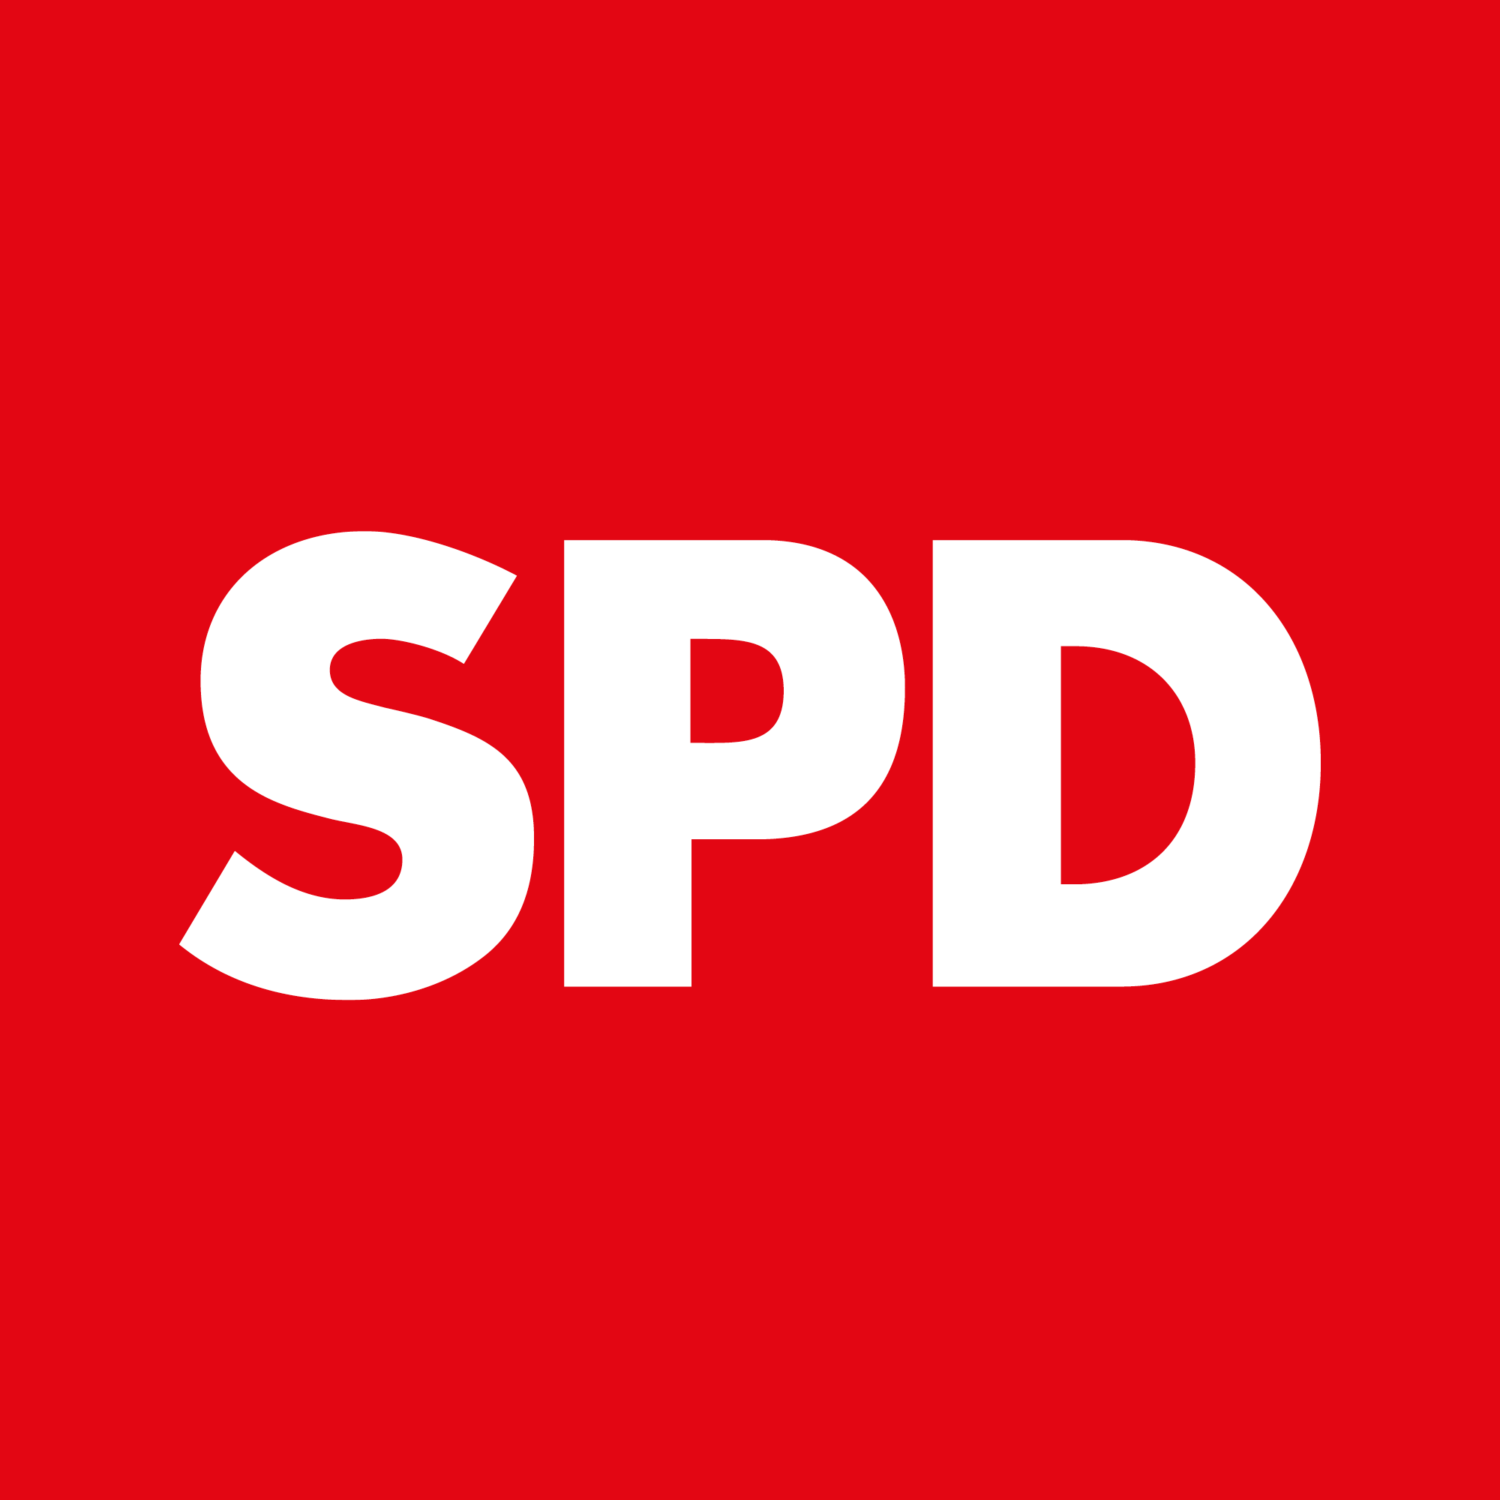 spd_logo